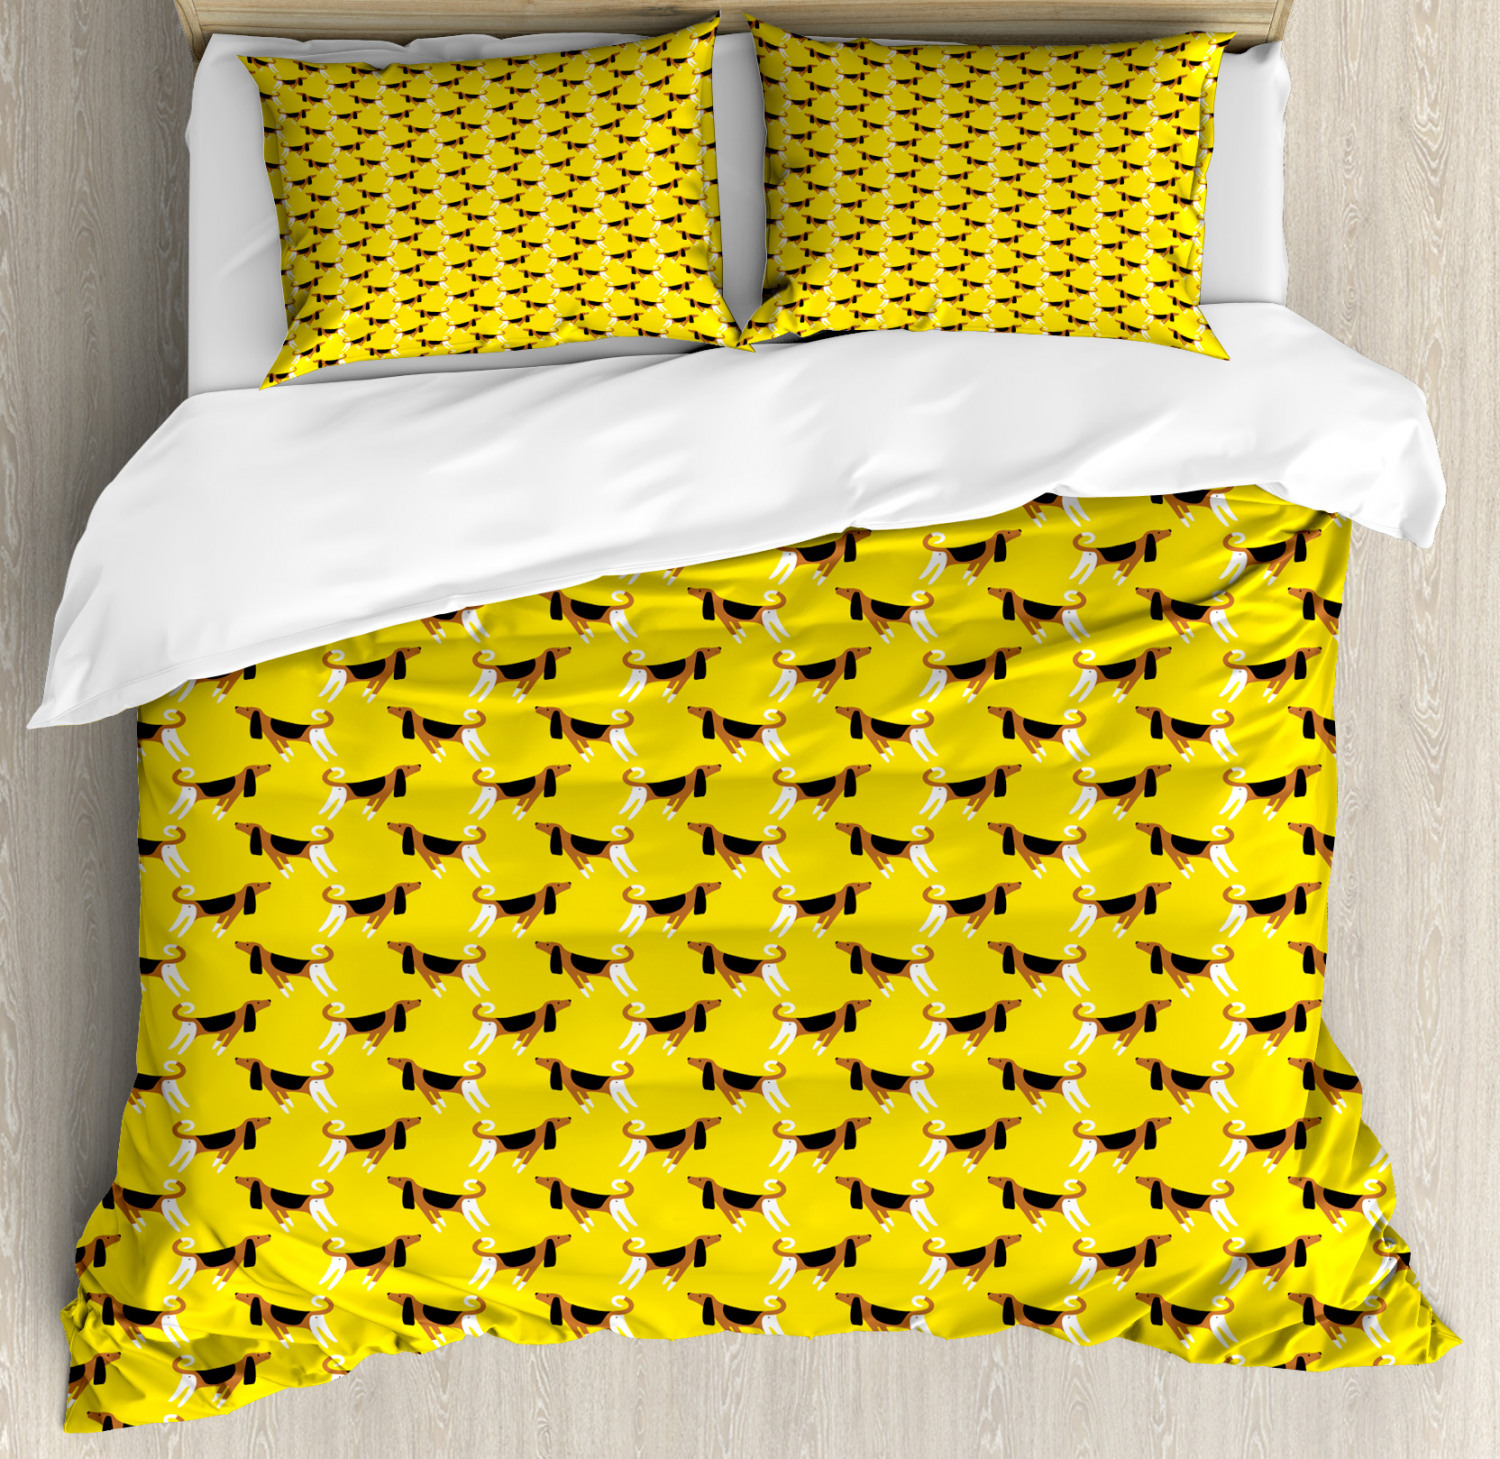 Hunde Bettwäsche Set Fun Pet Charaktere auf Gelb